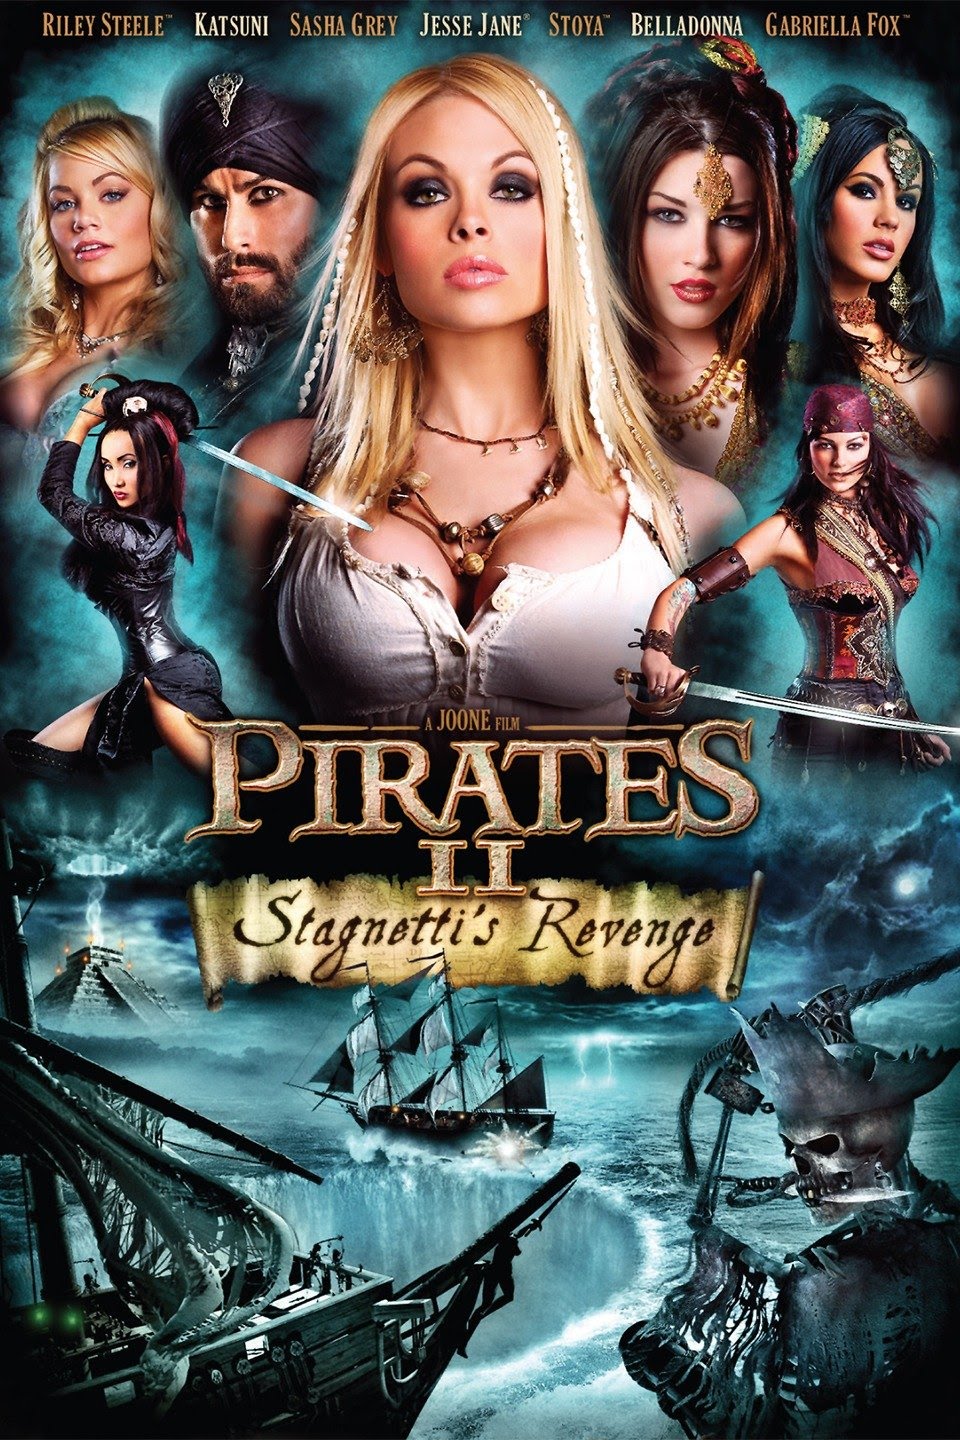 960px x 1440px - Pirates.2005.XXX.1080p.10bit.BluRay.x265.6CH.HEVC